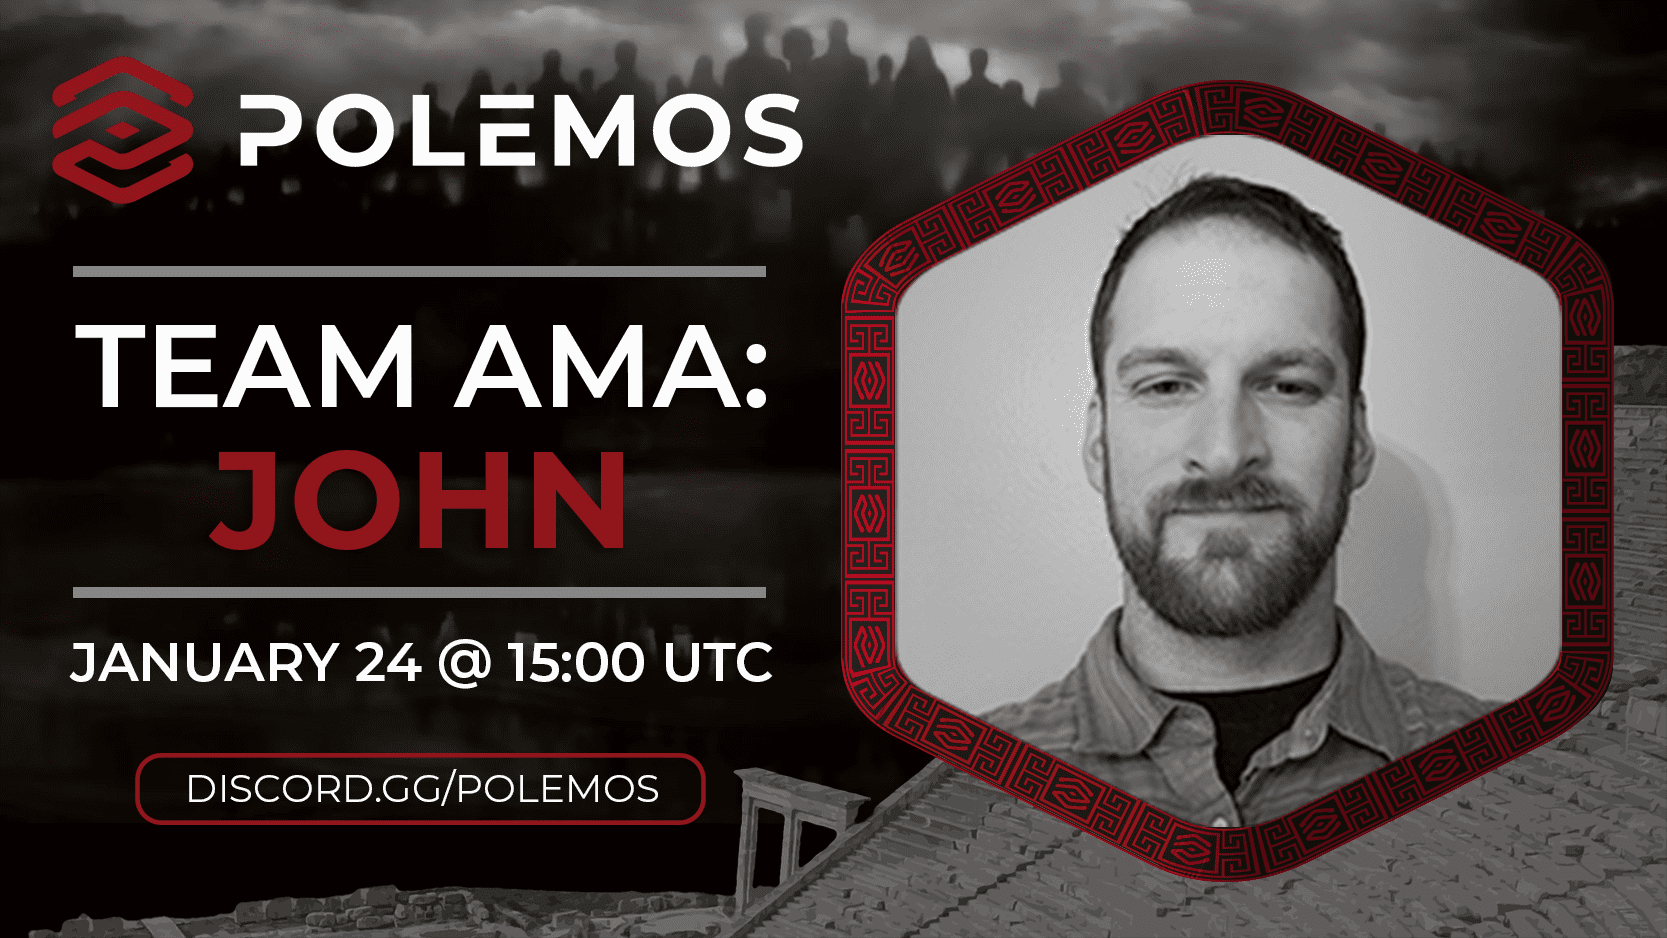 Polemos Team AMA: John